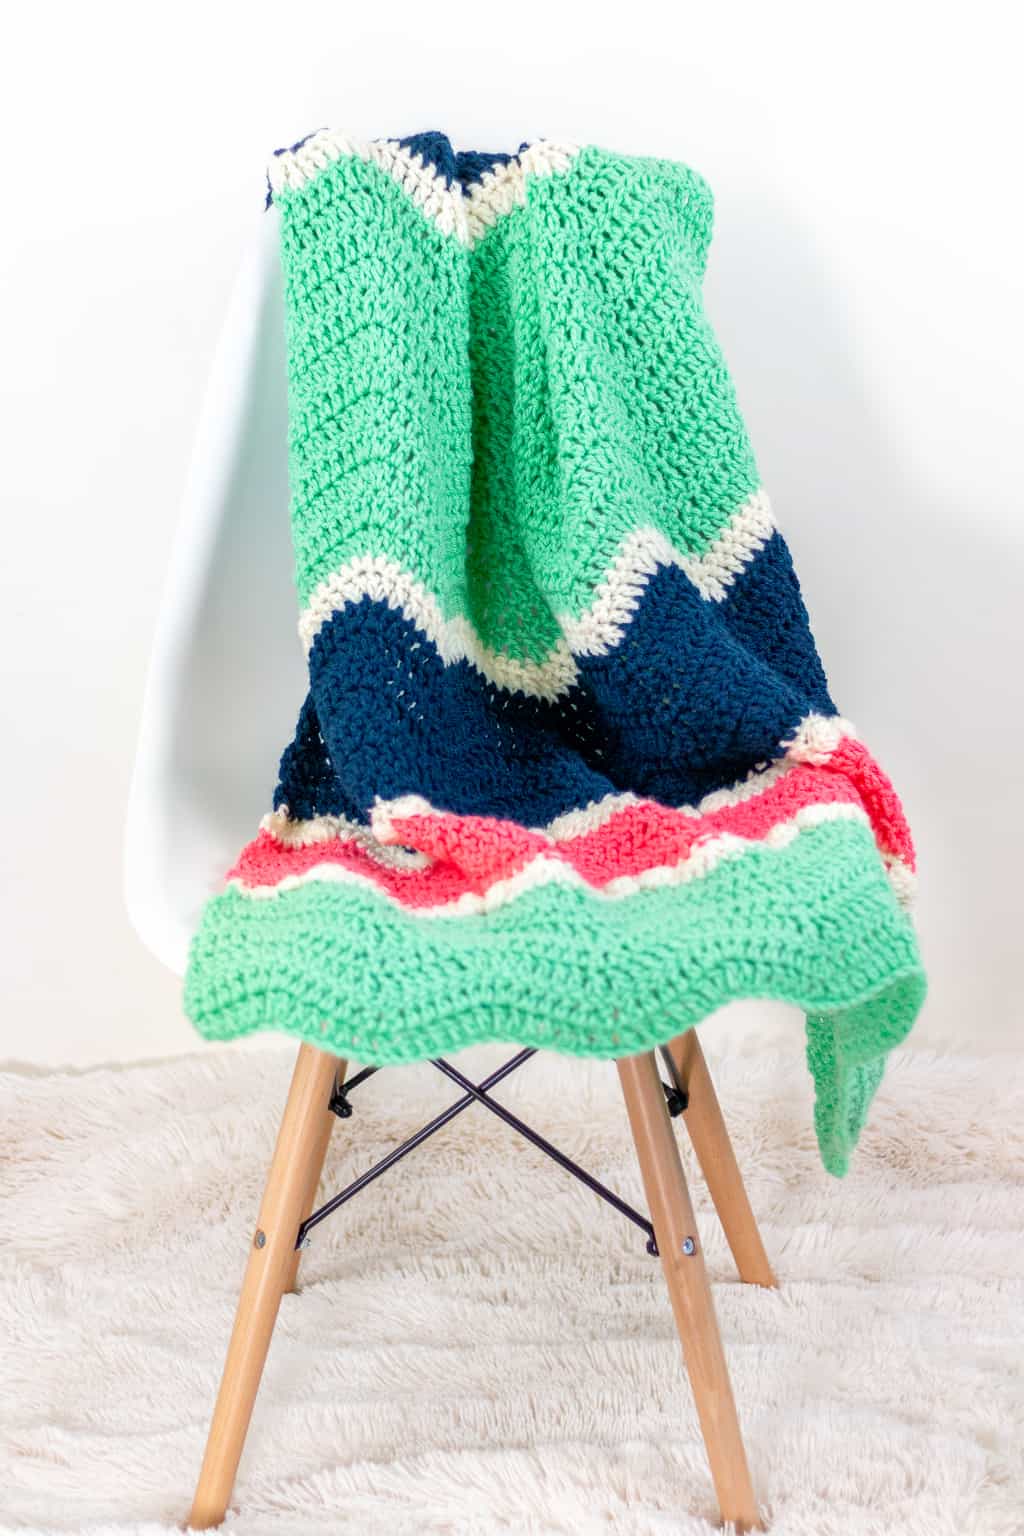 Crochet Ripple Blanket in eight blanket sizes